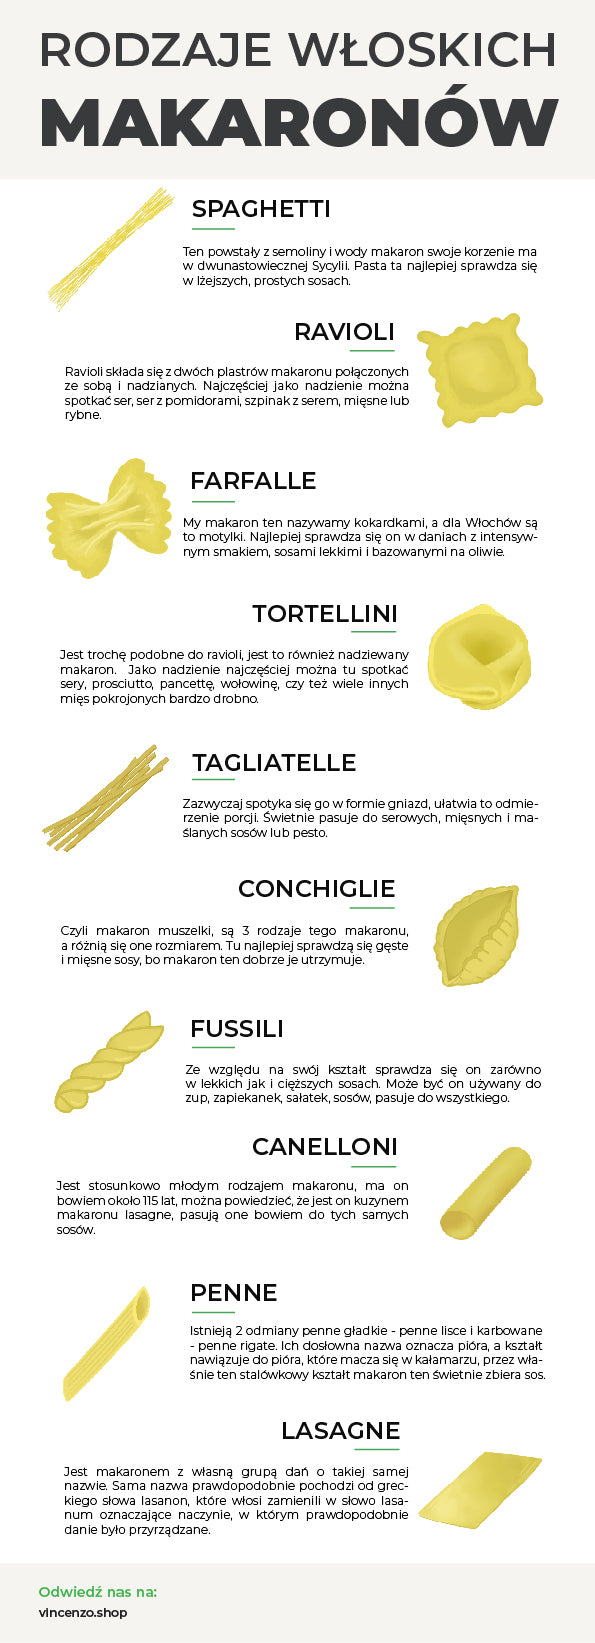 Rodzaje włoskich makaronów